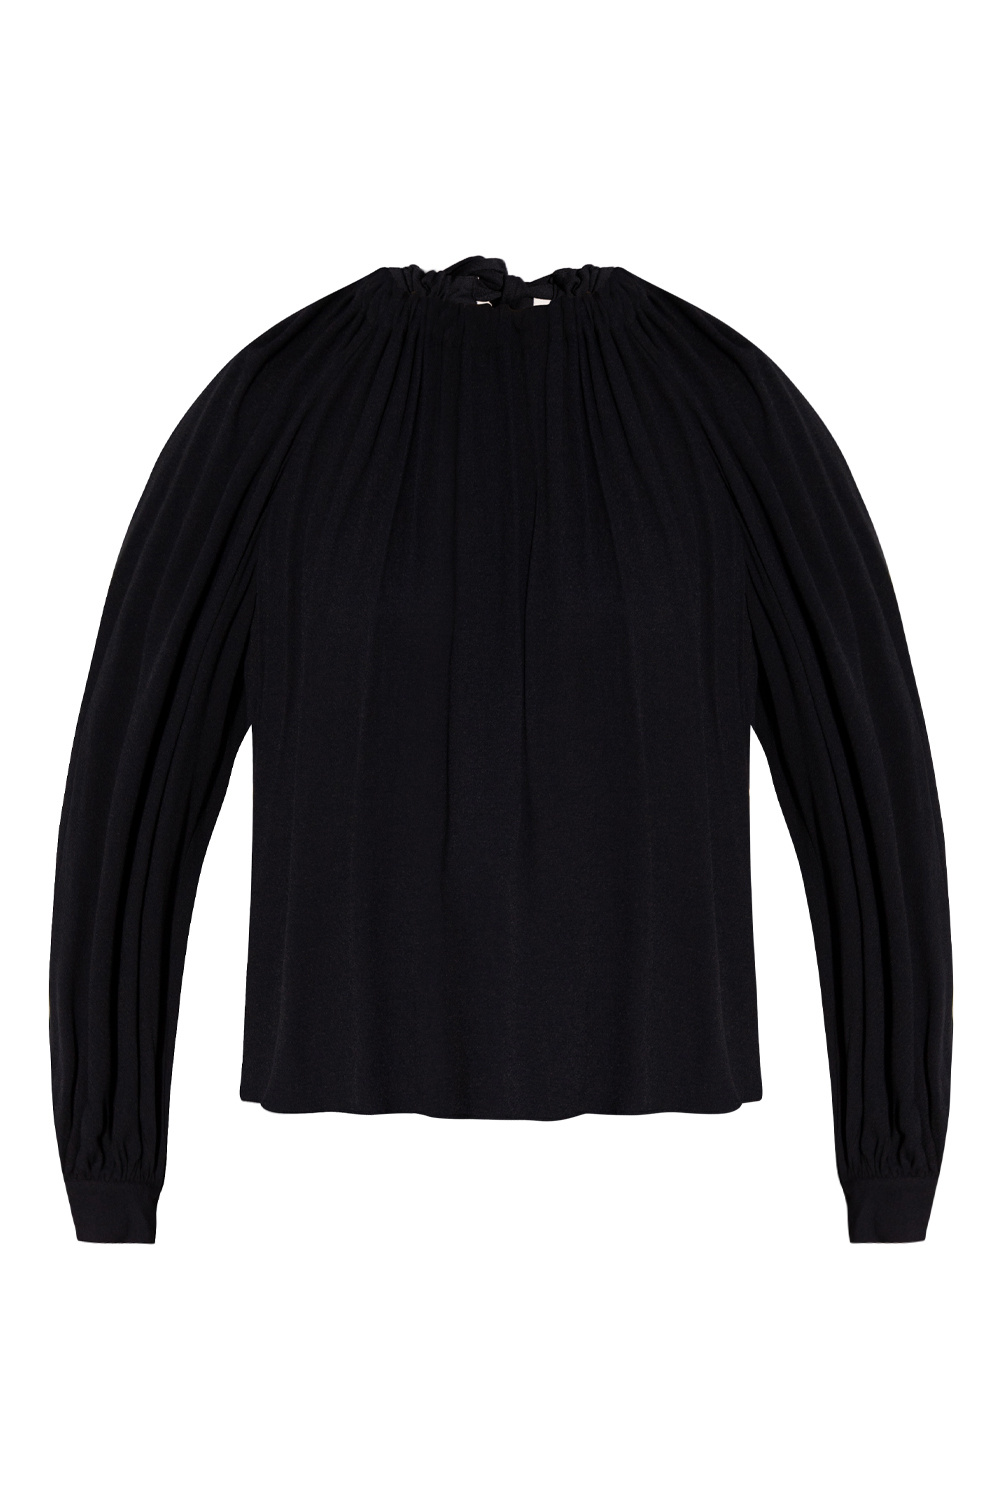 Louis Vuitton Regular Long-sleeved Shirt Raven. Size Xs